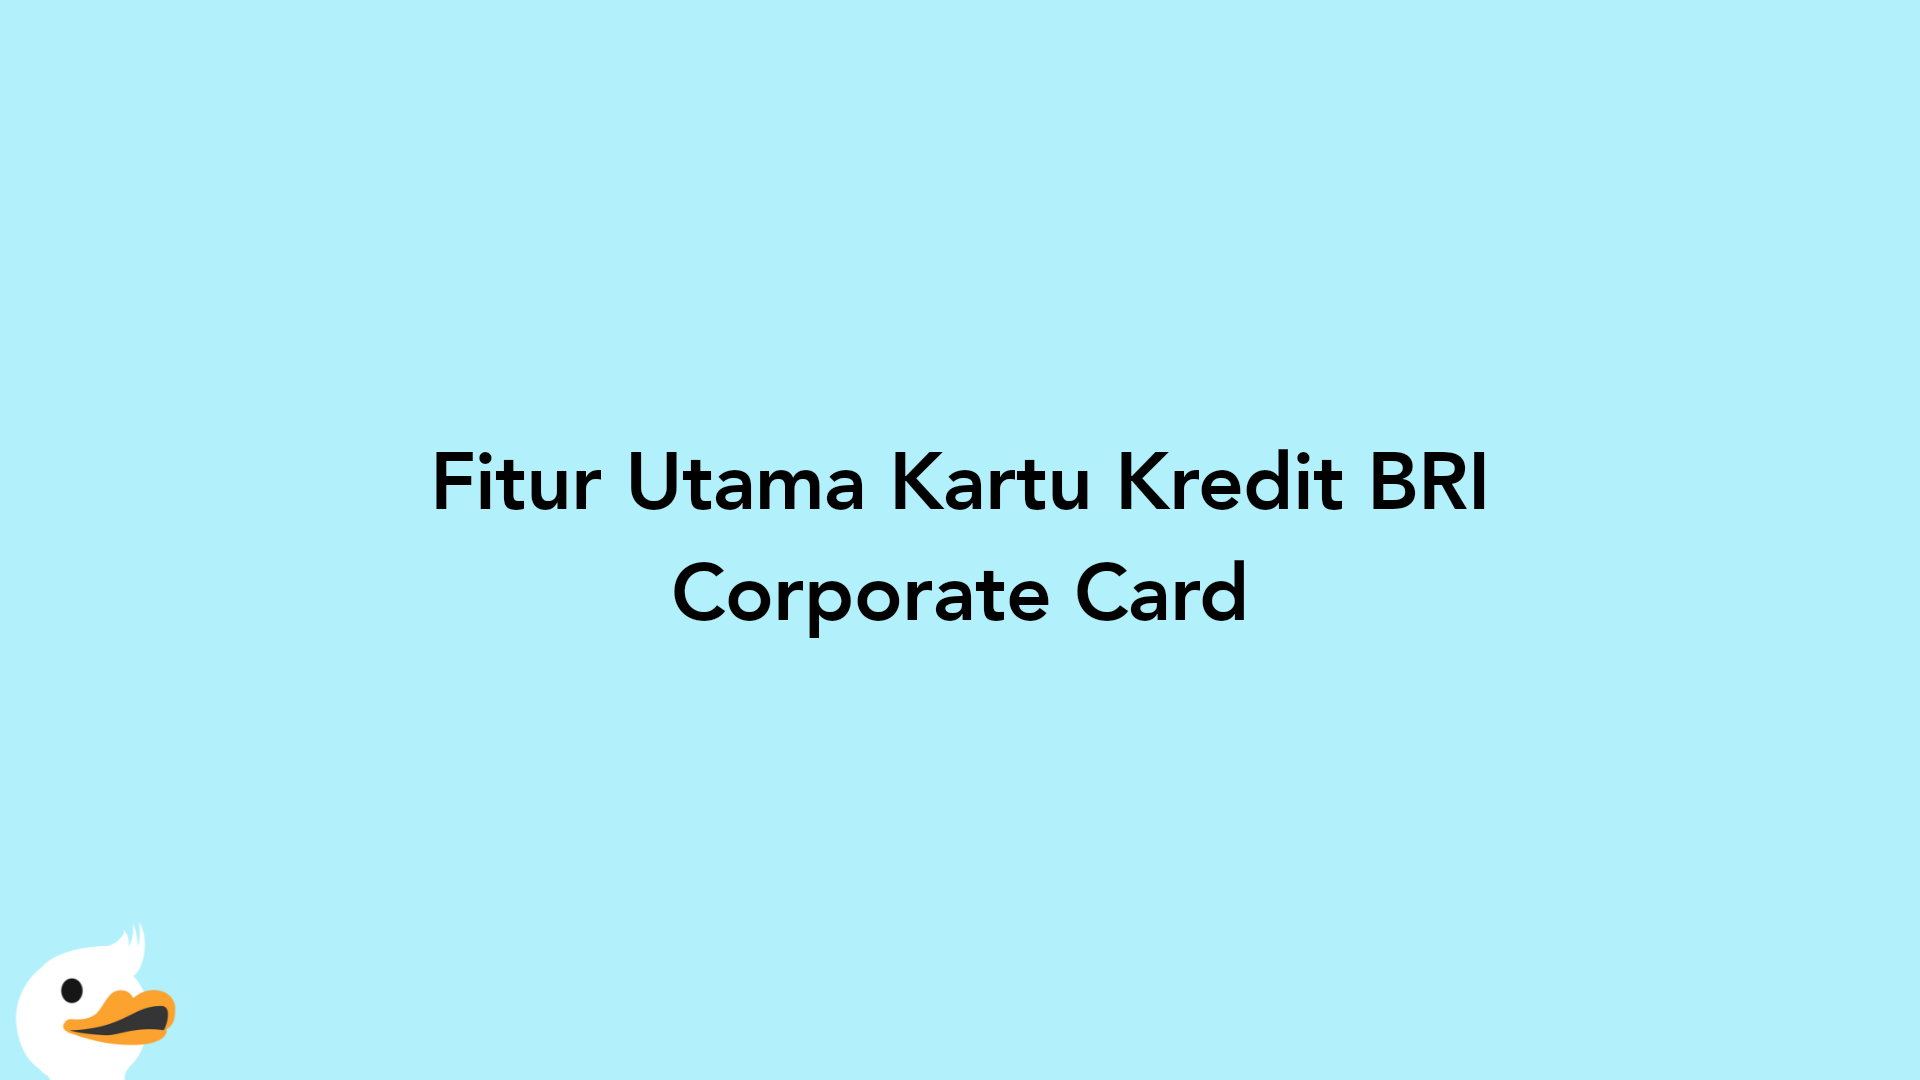 Fitur Utama Kartu Kredit BRI Corporate Card